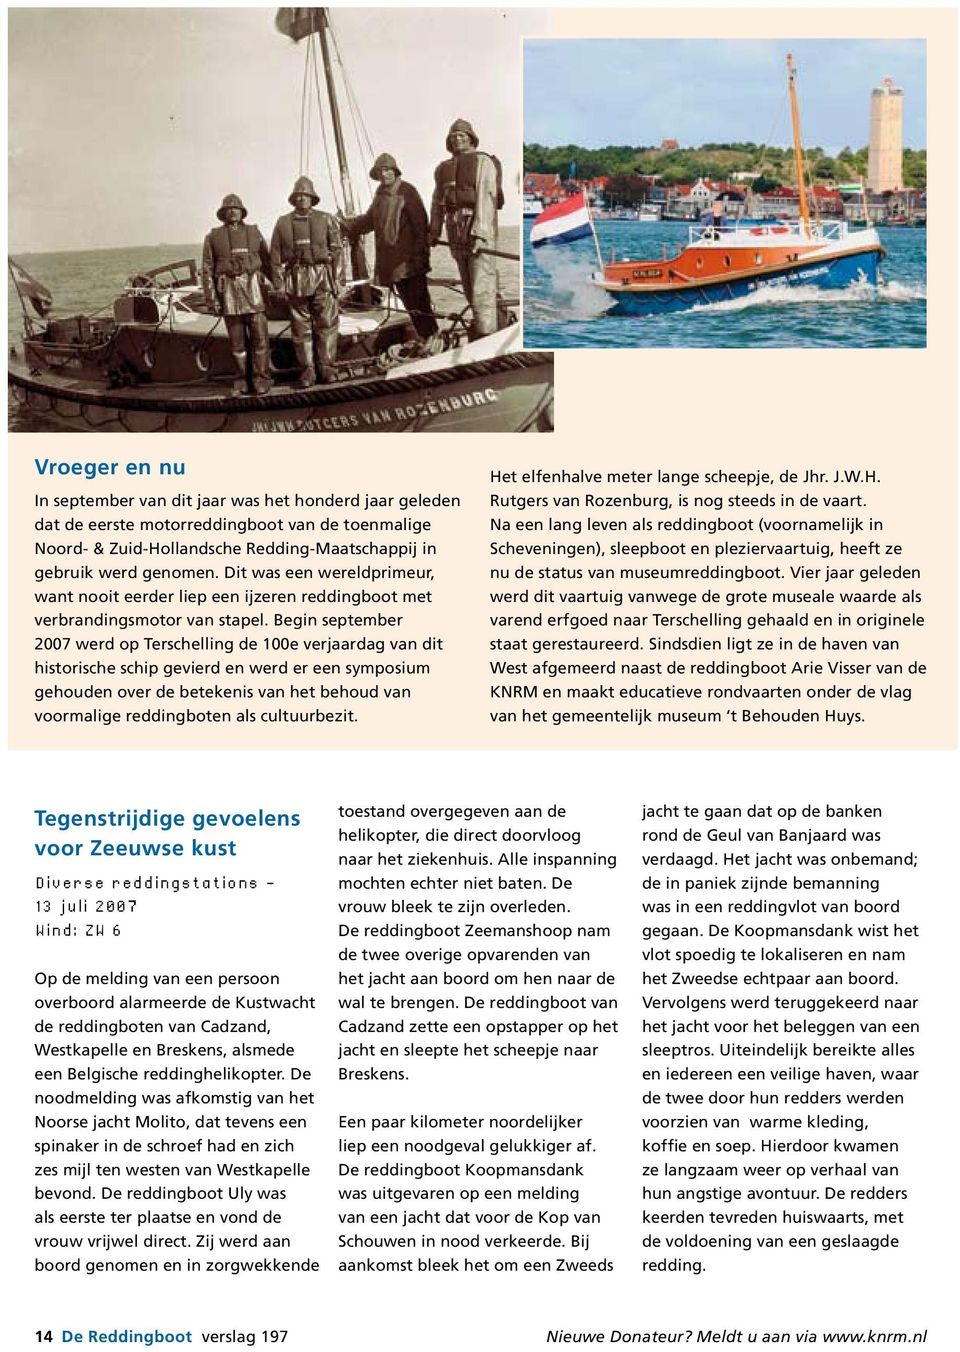 Begin september 2007 werd op Terschelling de 100e verjaardag van dit historische schip gevierd en werd er een symposium gehouden over de betekenis van het behoud van voormalige reddingboten als